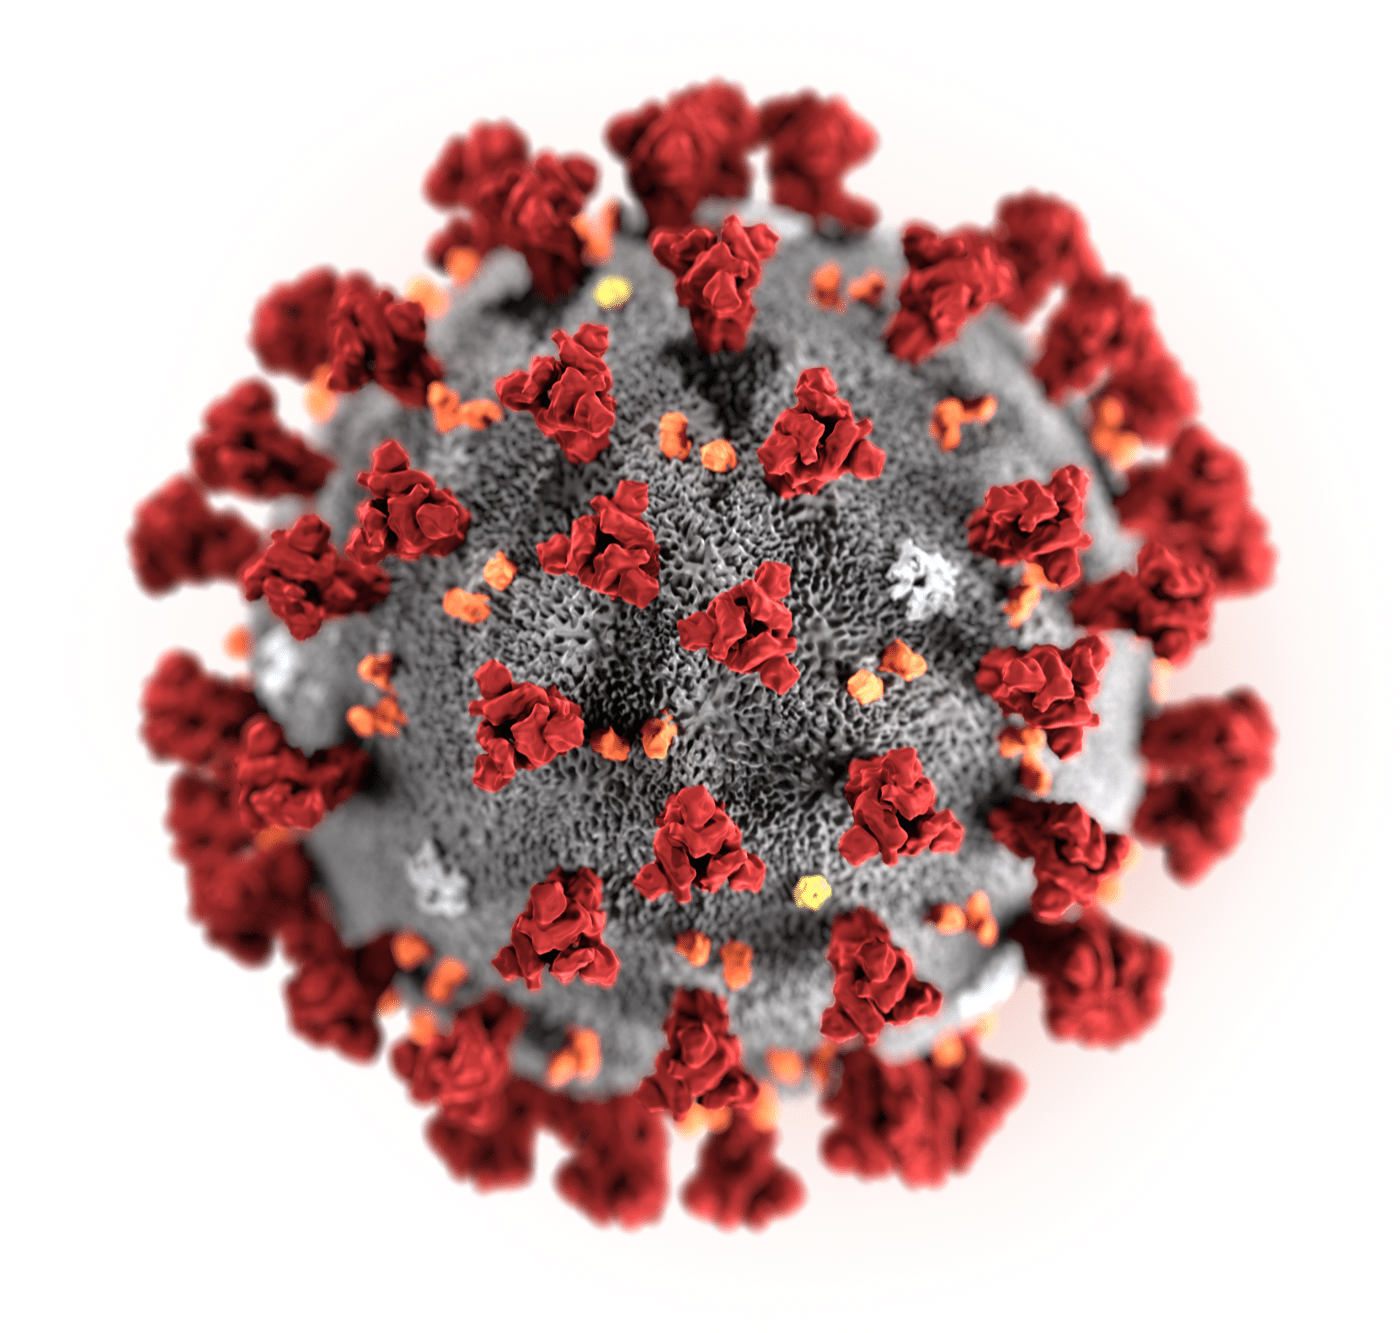 322 people have died from coronavirus in Georgia this week